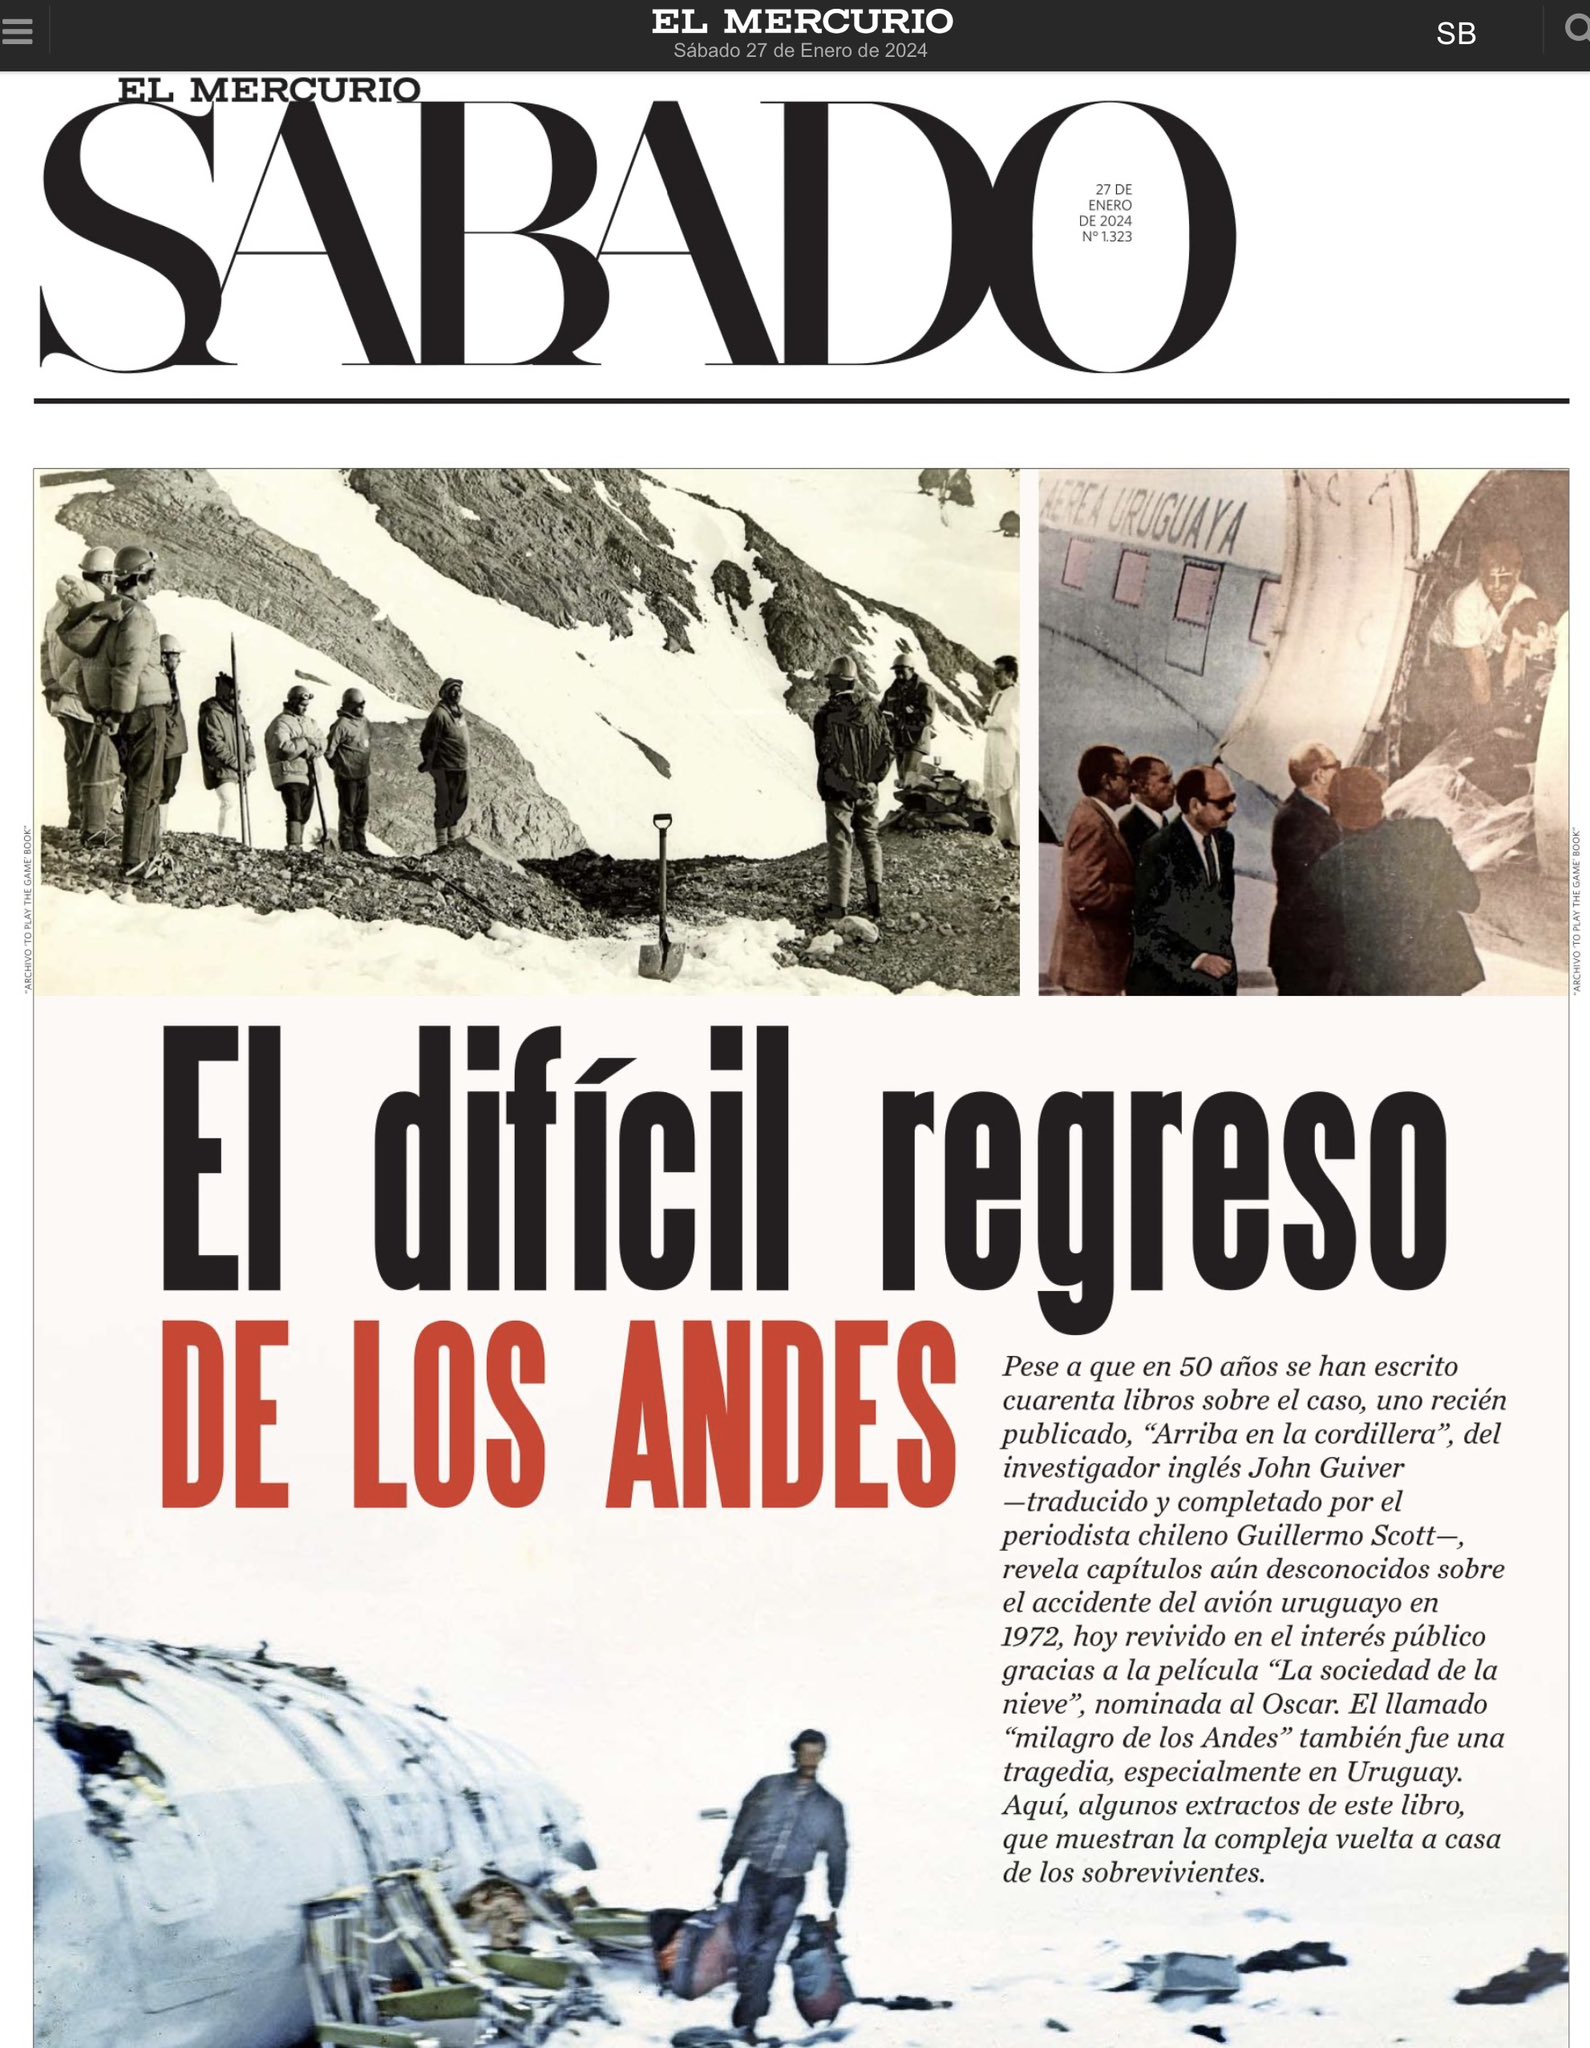 Aldo Lema - Uruguay on X: “Arriba en la Cordillera”, el nuevo